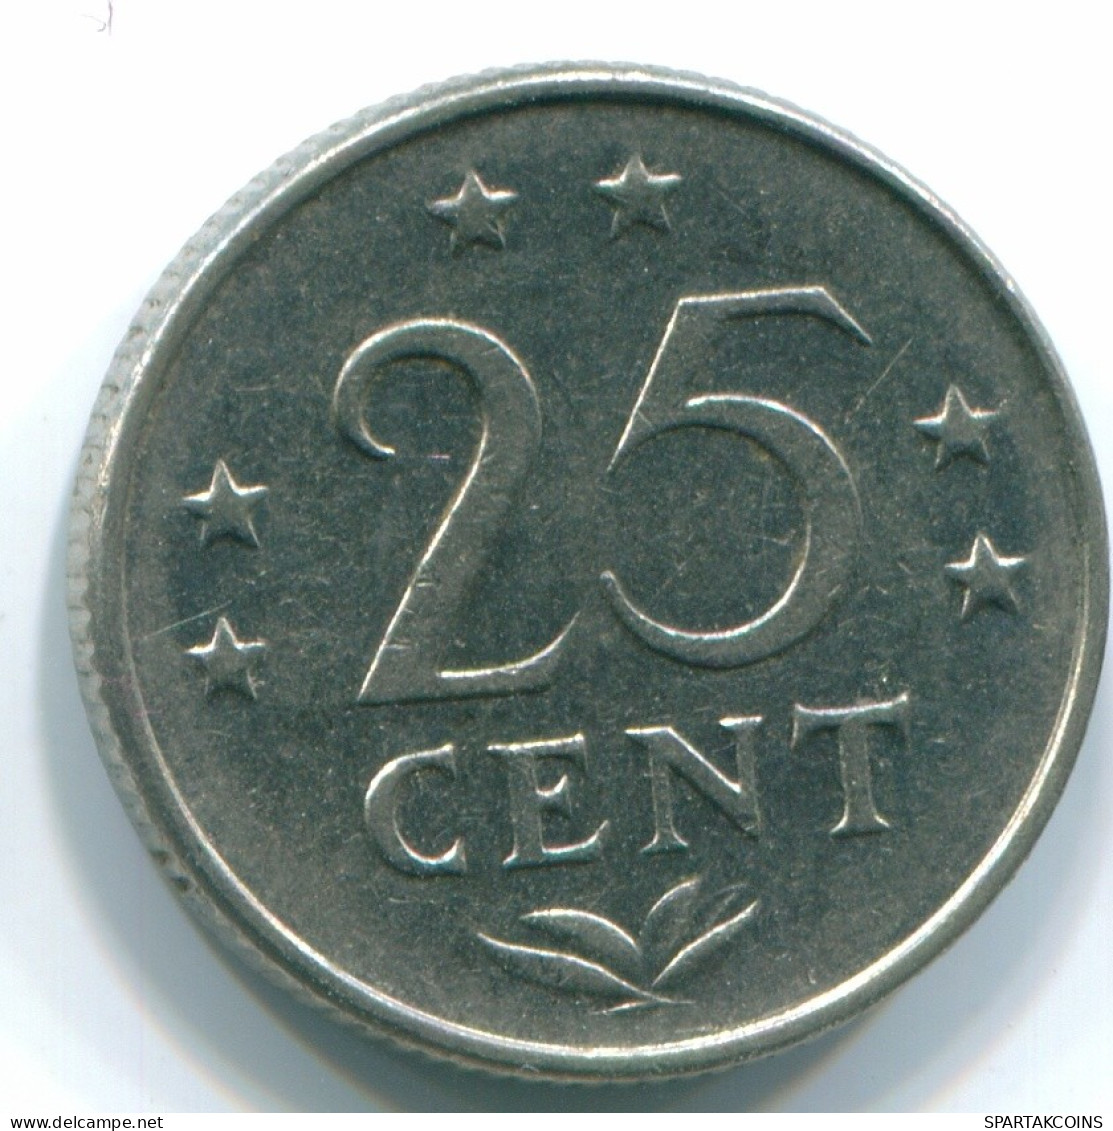 25 CENTS 1976 NIEDERLÄNDISCHE ANTILLEN Nickel Koloniale Münze #S11641.D.A - Antille Olandesi